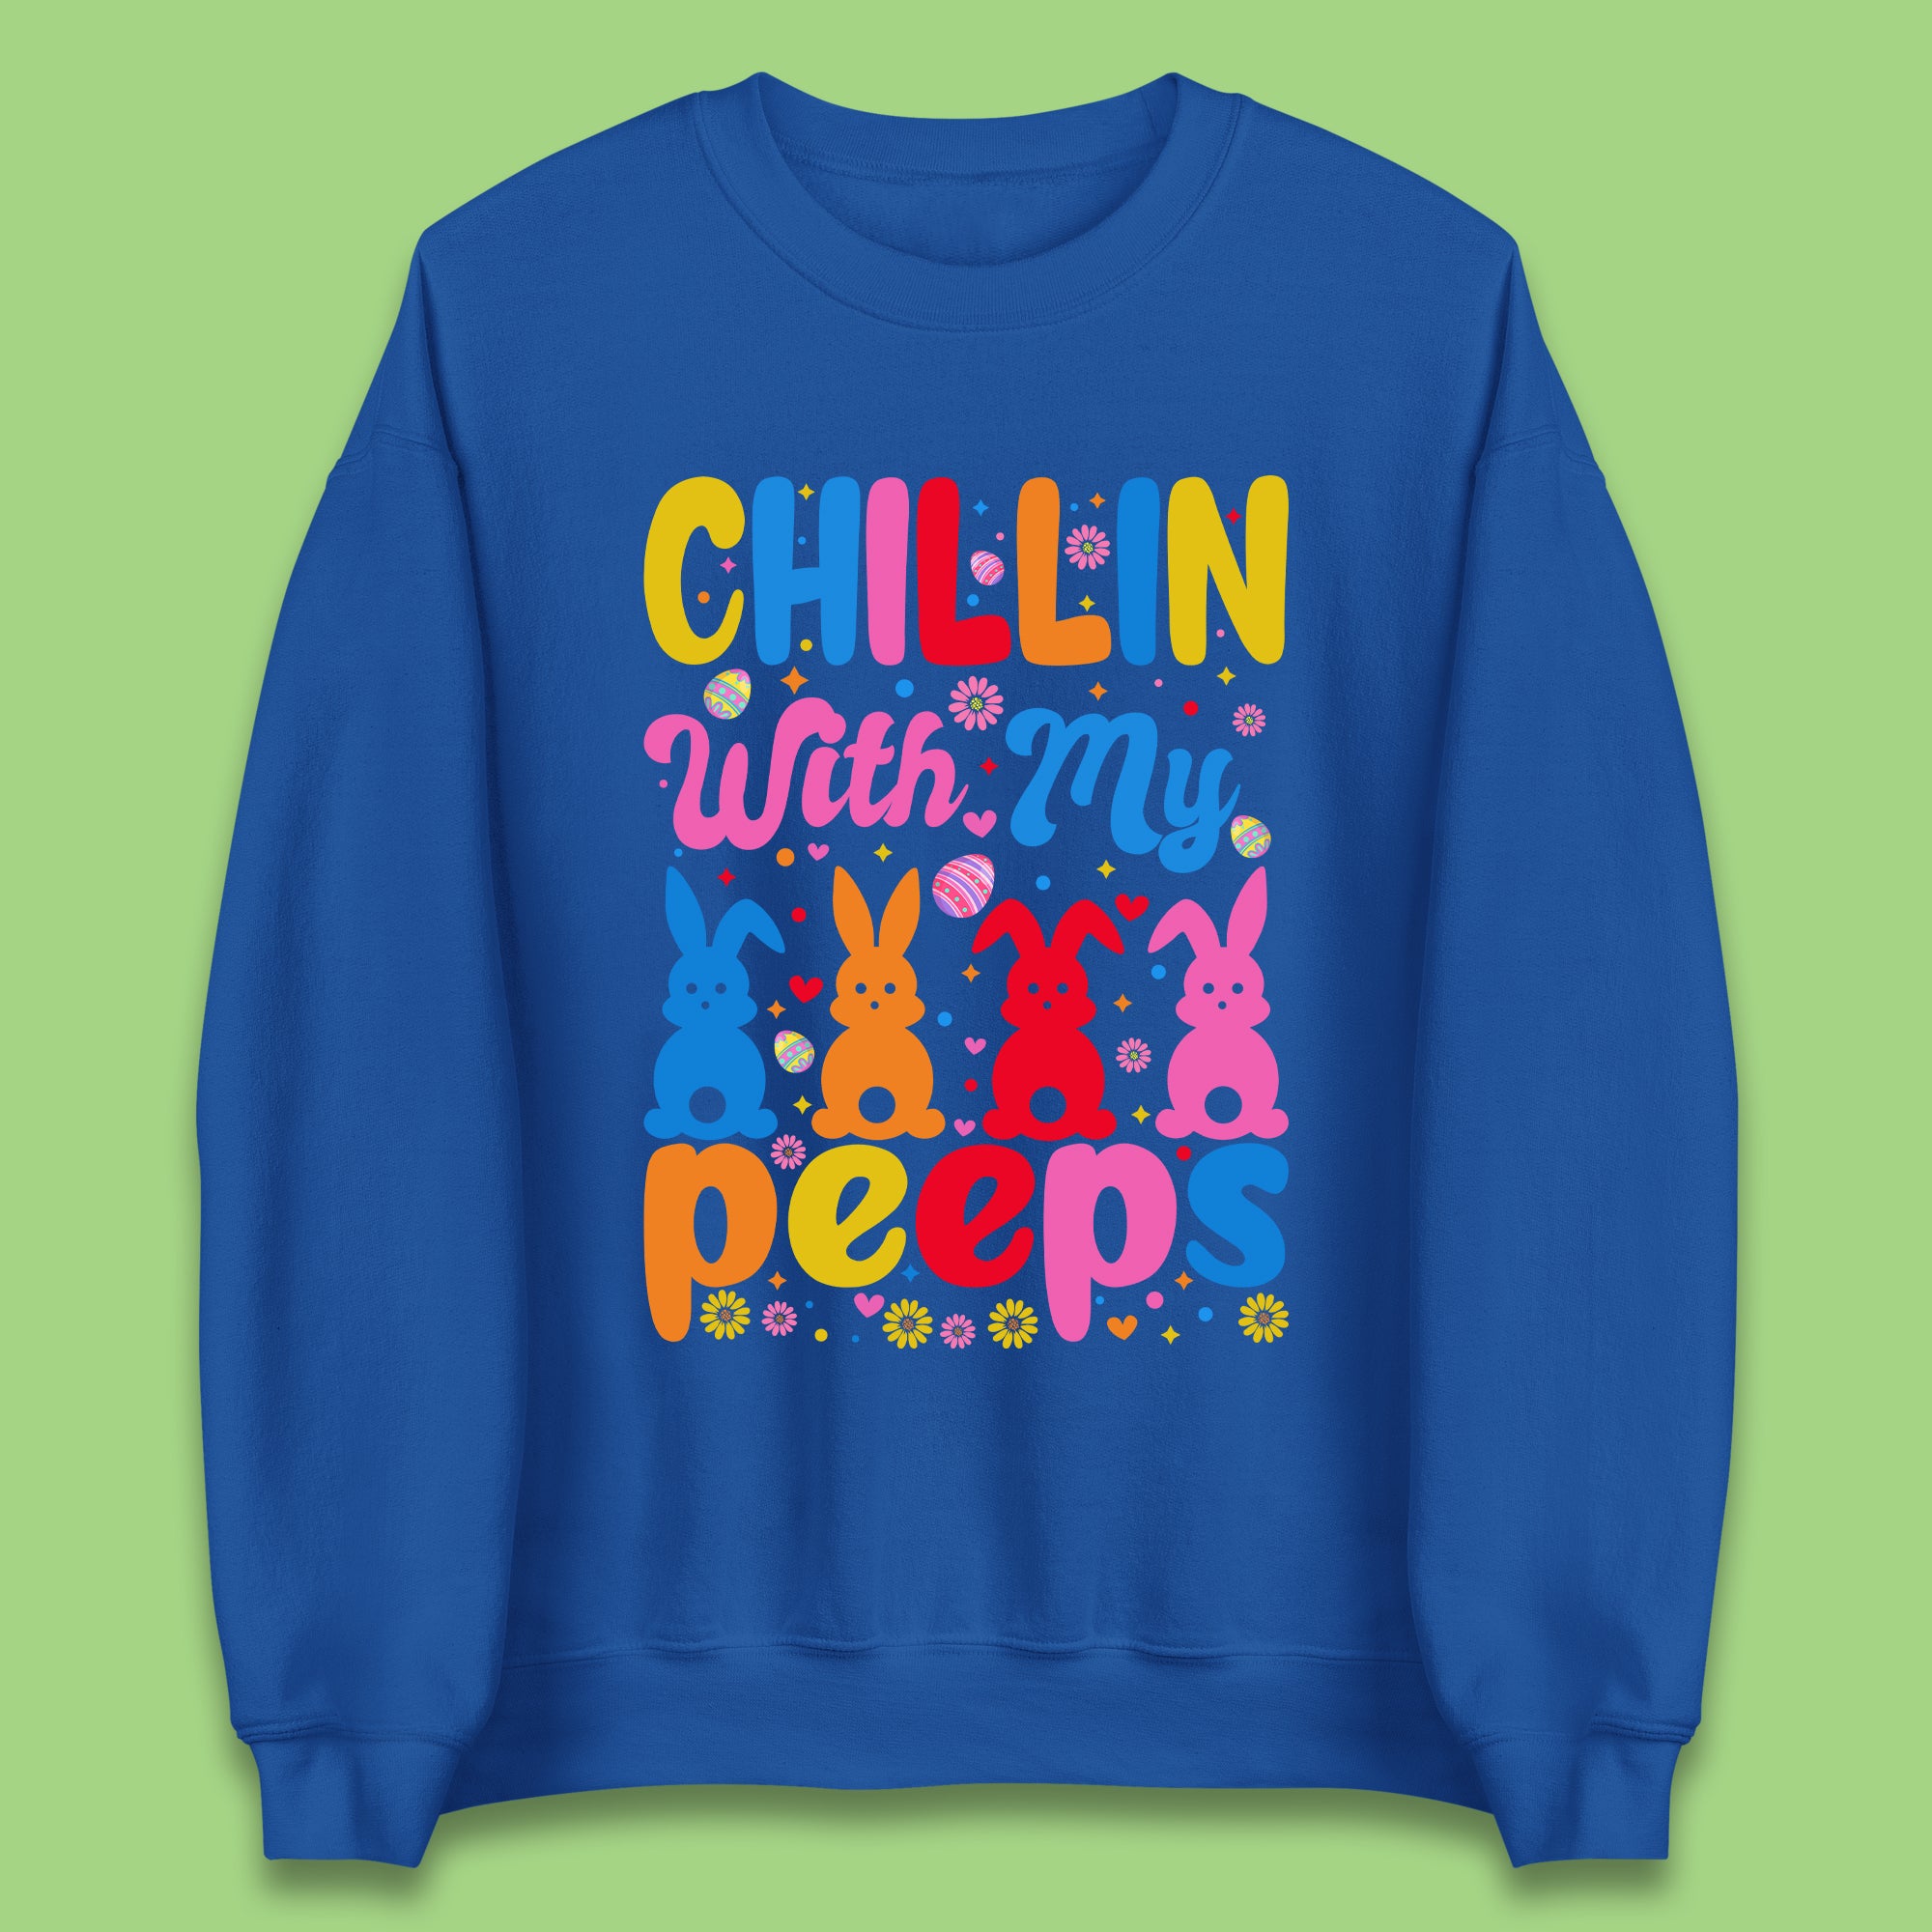 Chillin With My Peeps Unisex Sweatshirt